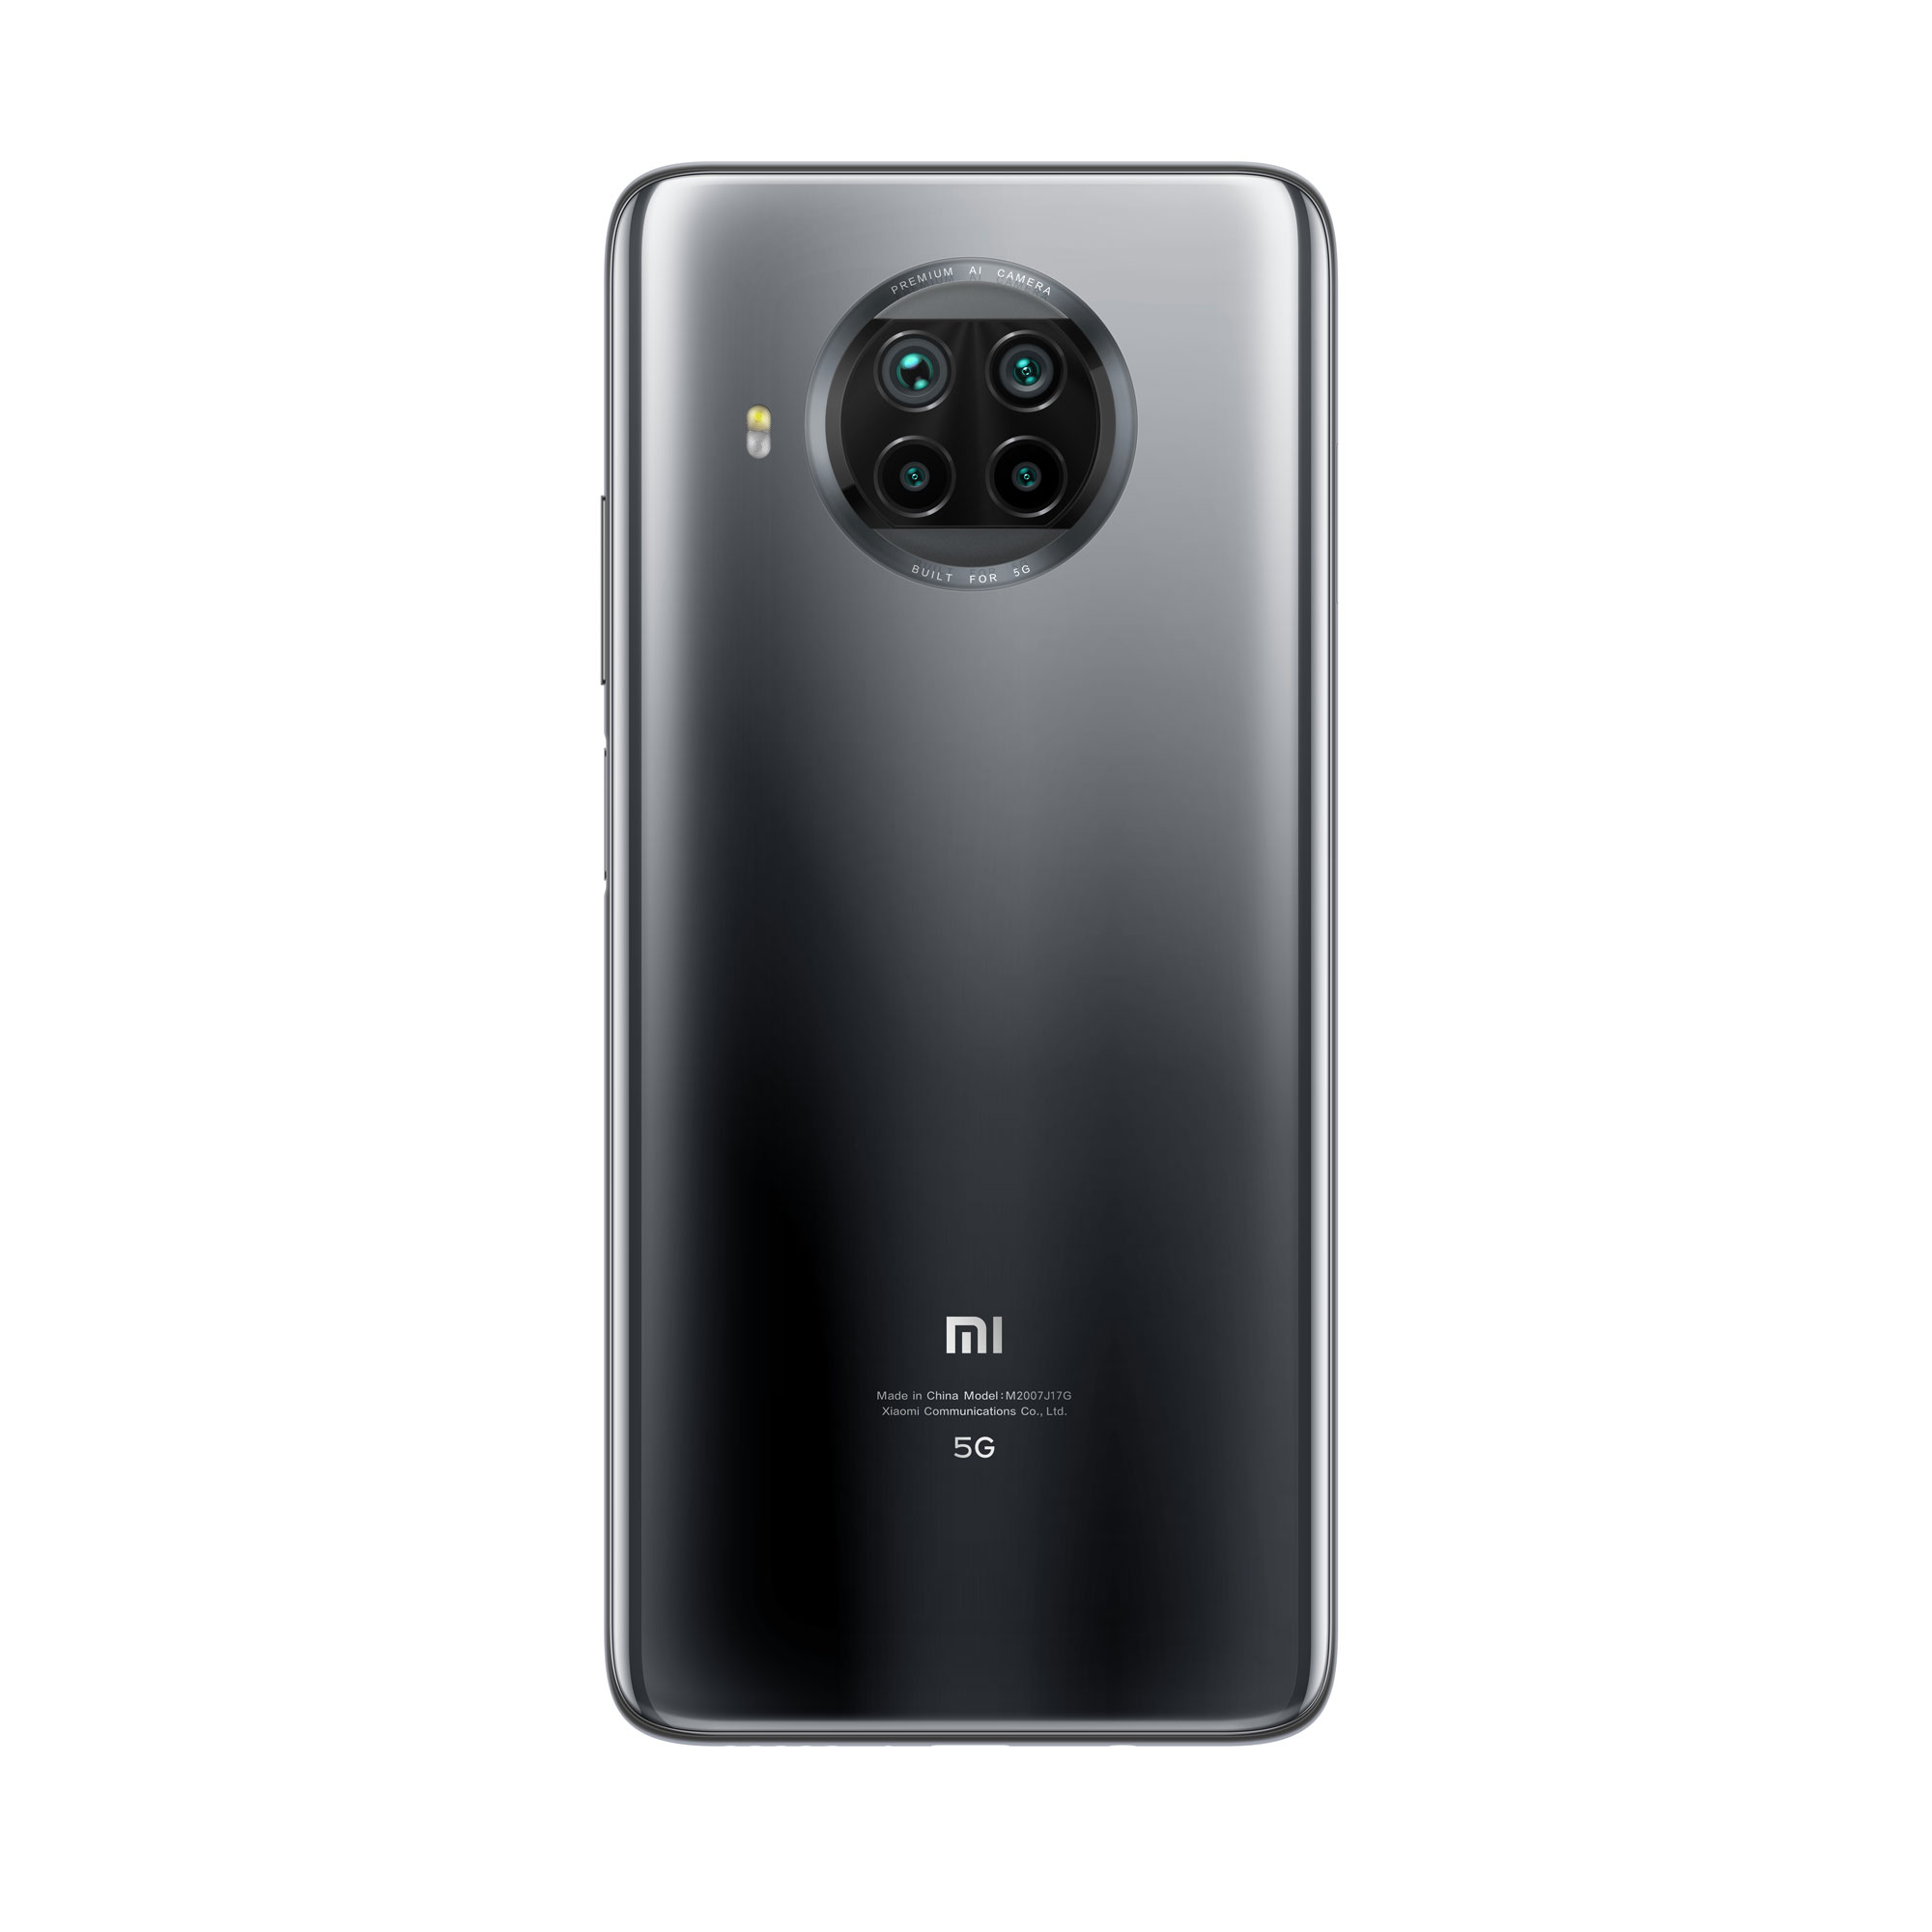 گوشی موبایل شیائومی Mi 10T Lite 5G ظرفیت 128 گیگابایت با گارانتی 18 ماه